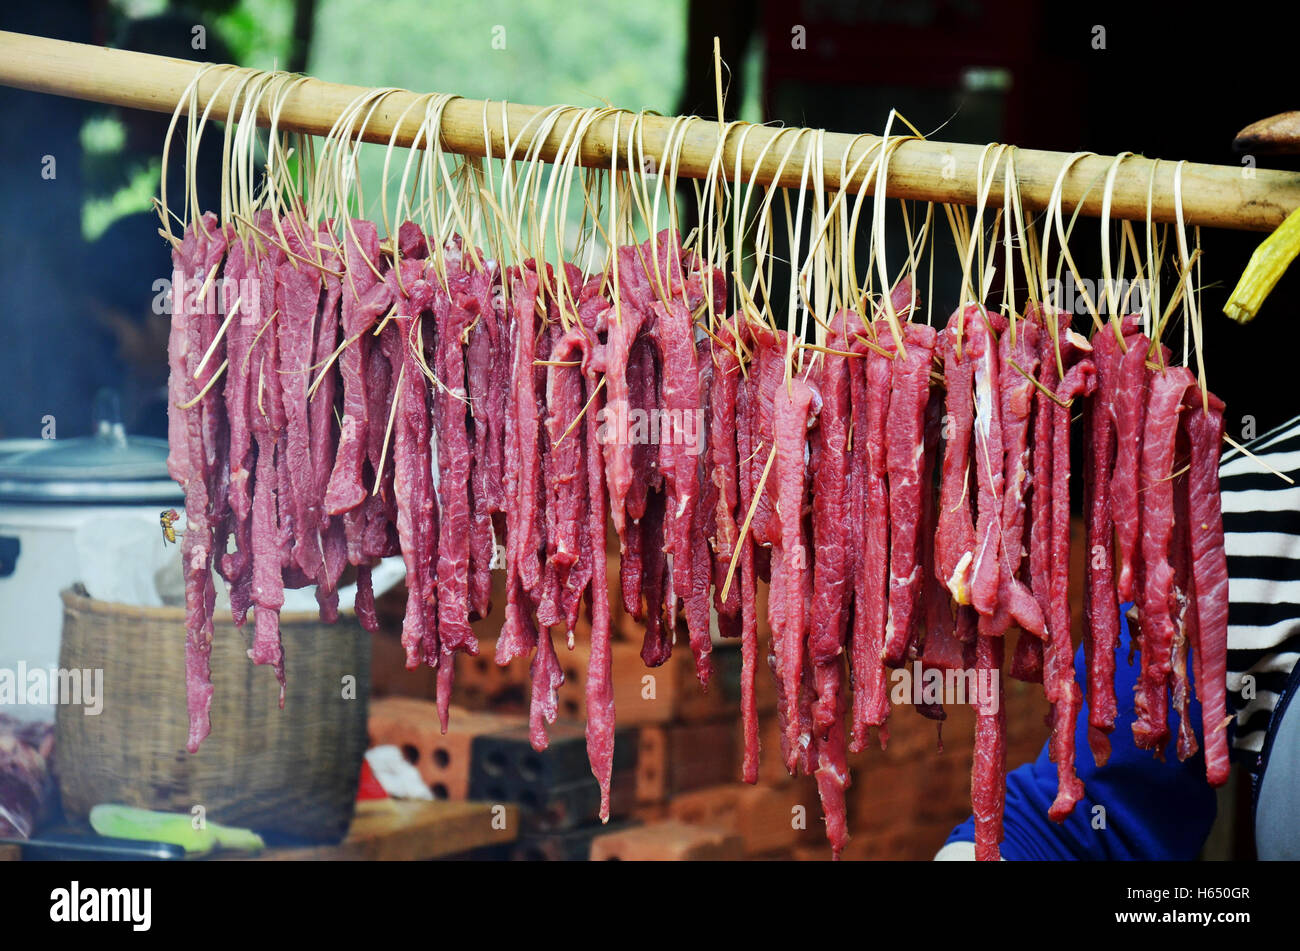 Popolo Lao cottura arrosto di maiale e interiora di maiale alla griglia per la vendita su una vecchia stufa a mercato locale in Laos Foto Stock